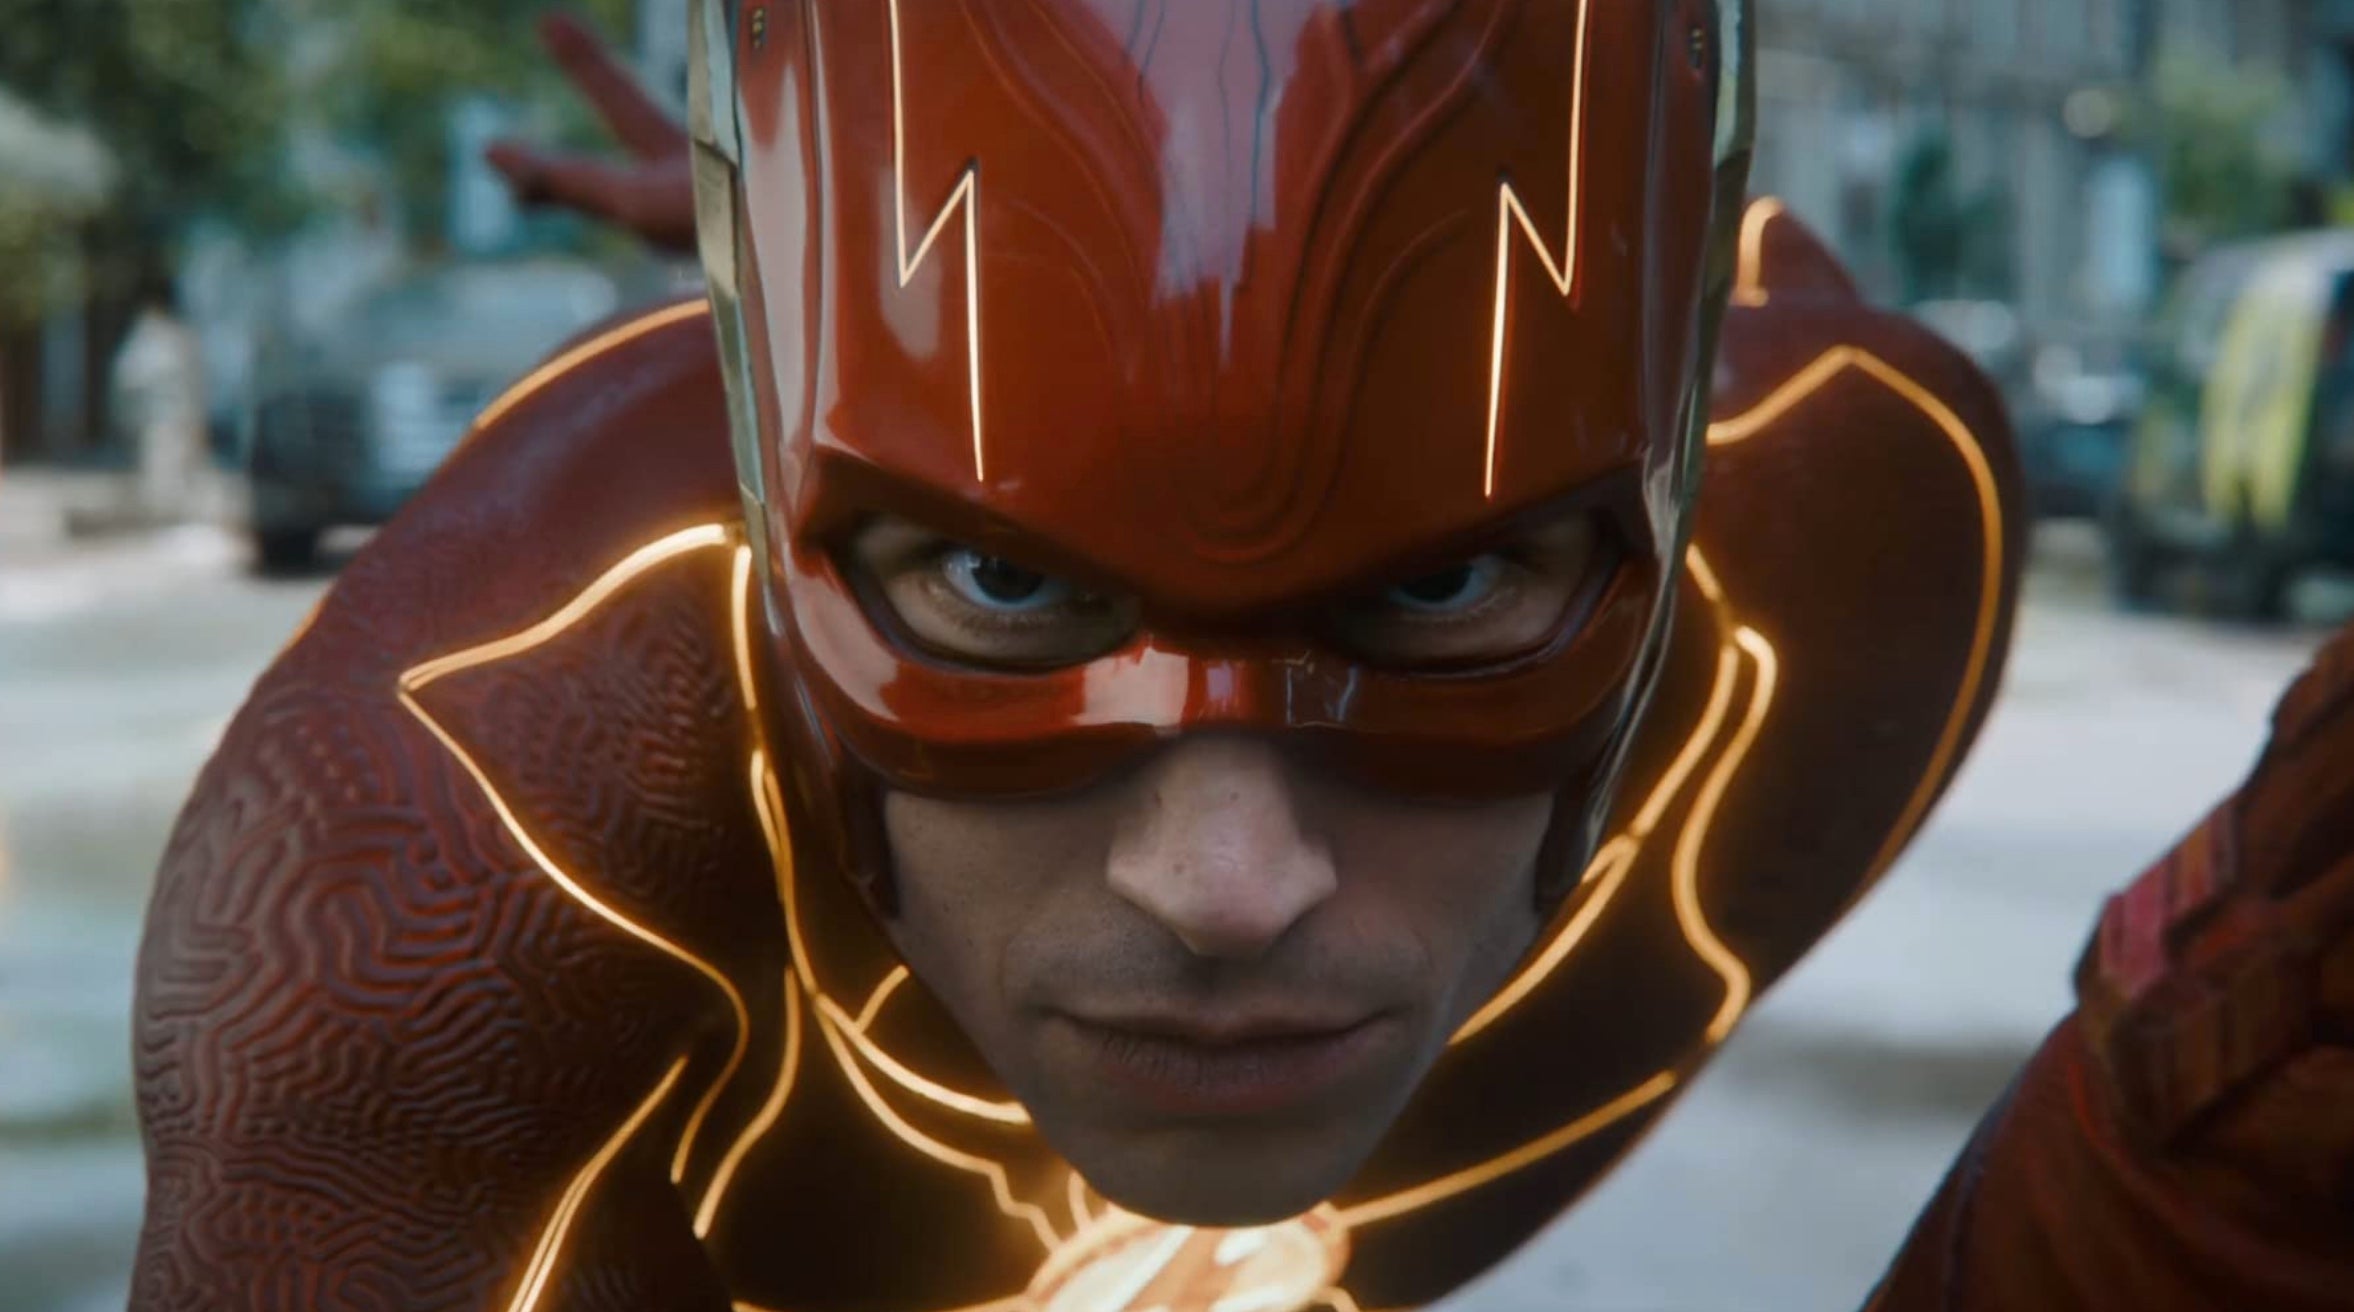 Ezra Miller as the Flash. (Image: Warner Bros.)